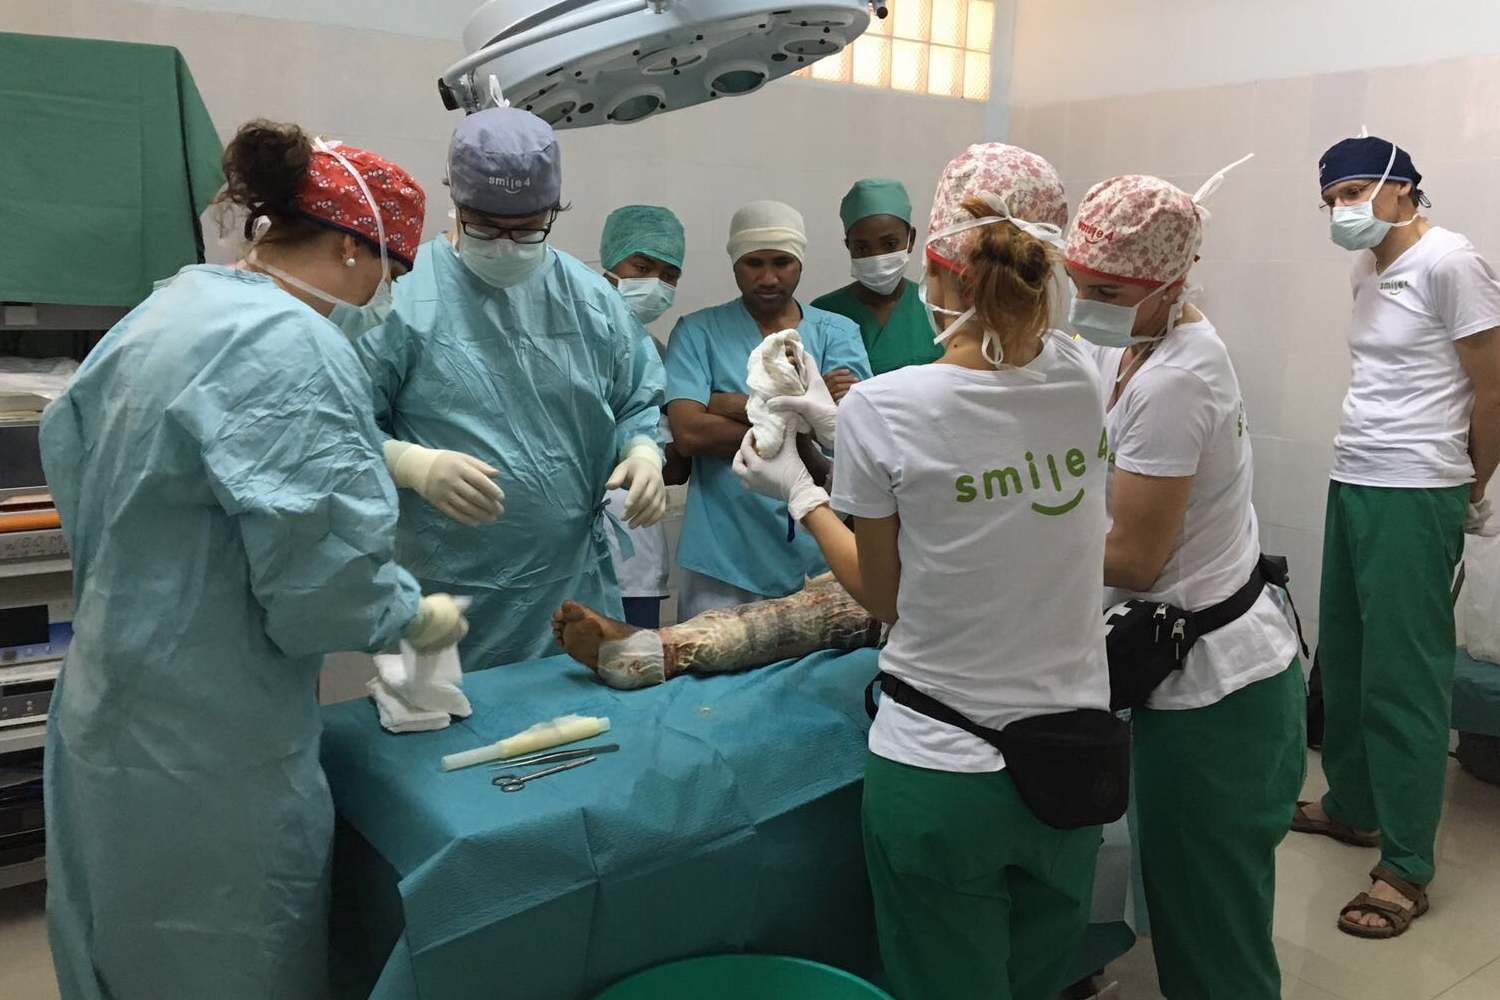 Madagassische Ärzte beobachten den genauen Ablauf, in einem nächsten Schritt probieren sie selbst die ersten Teilschritte